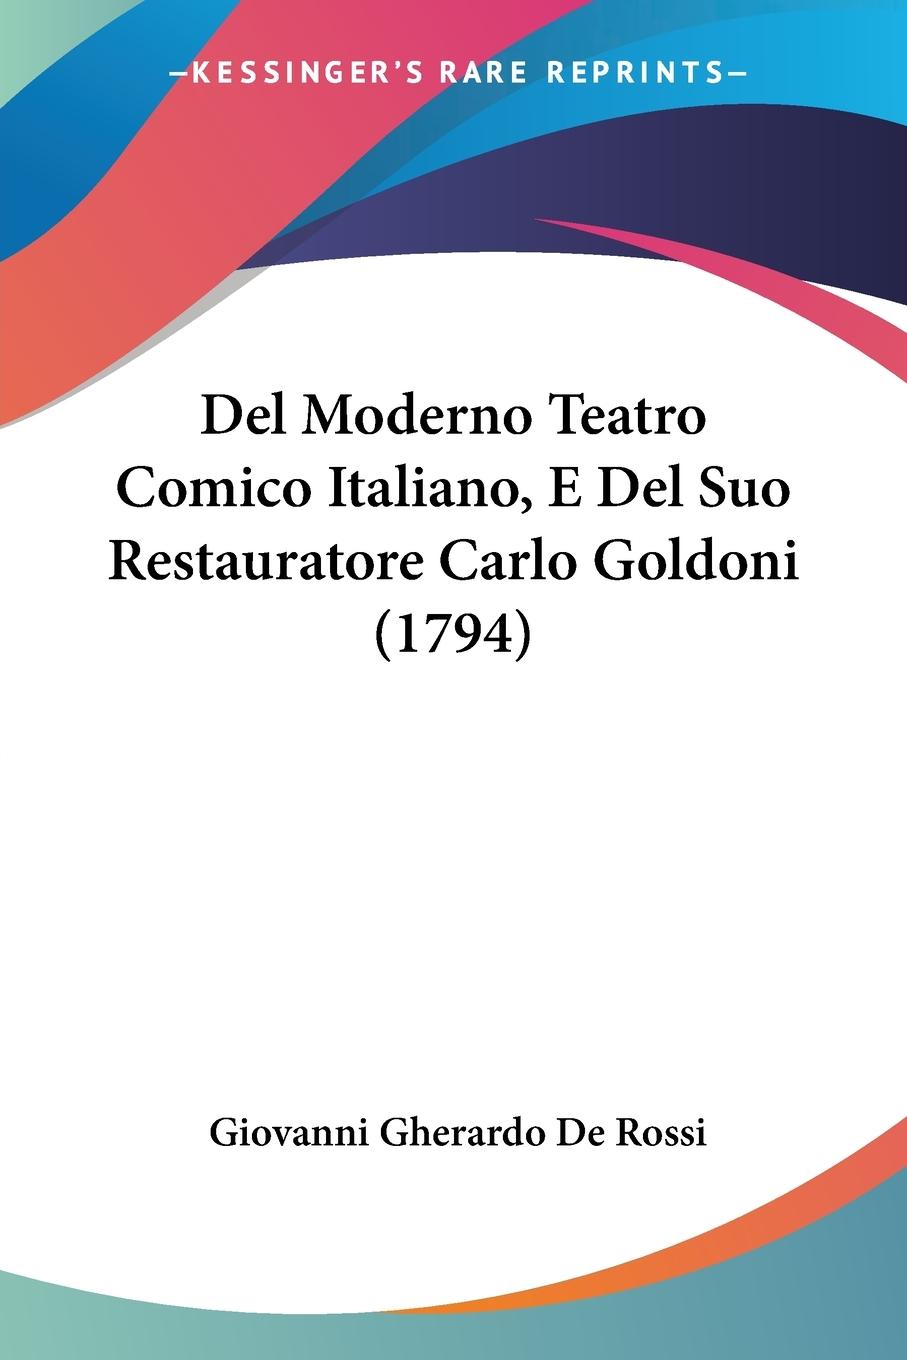 Del Moderno Teatro Comico Italiano, E Del Suo Restauratore Carlo Goldoni (1794) - De Rossi, Giovanni Gherardo